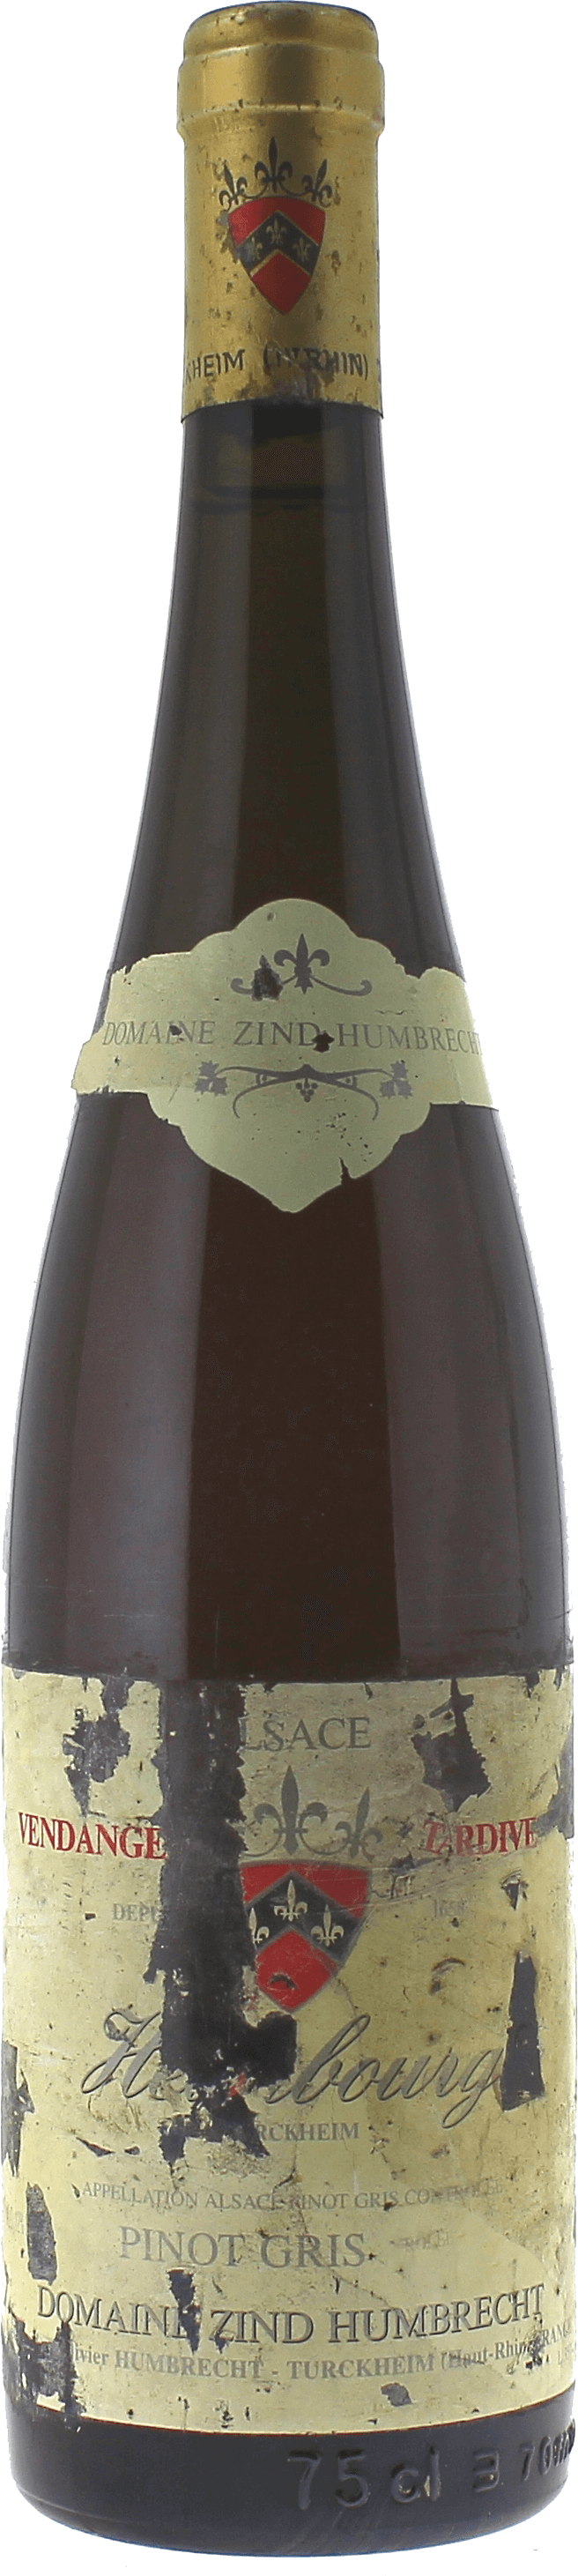 Pinot-gris heimbourg vendange tardive zind-humbrecht 1998  Zind Humbrecht, ALSACE